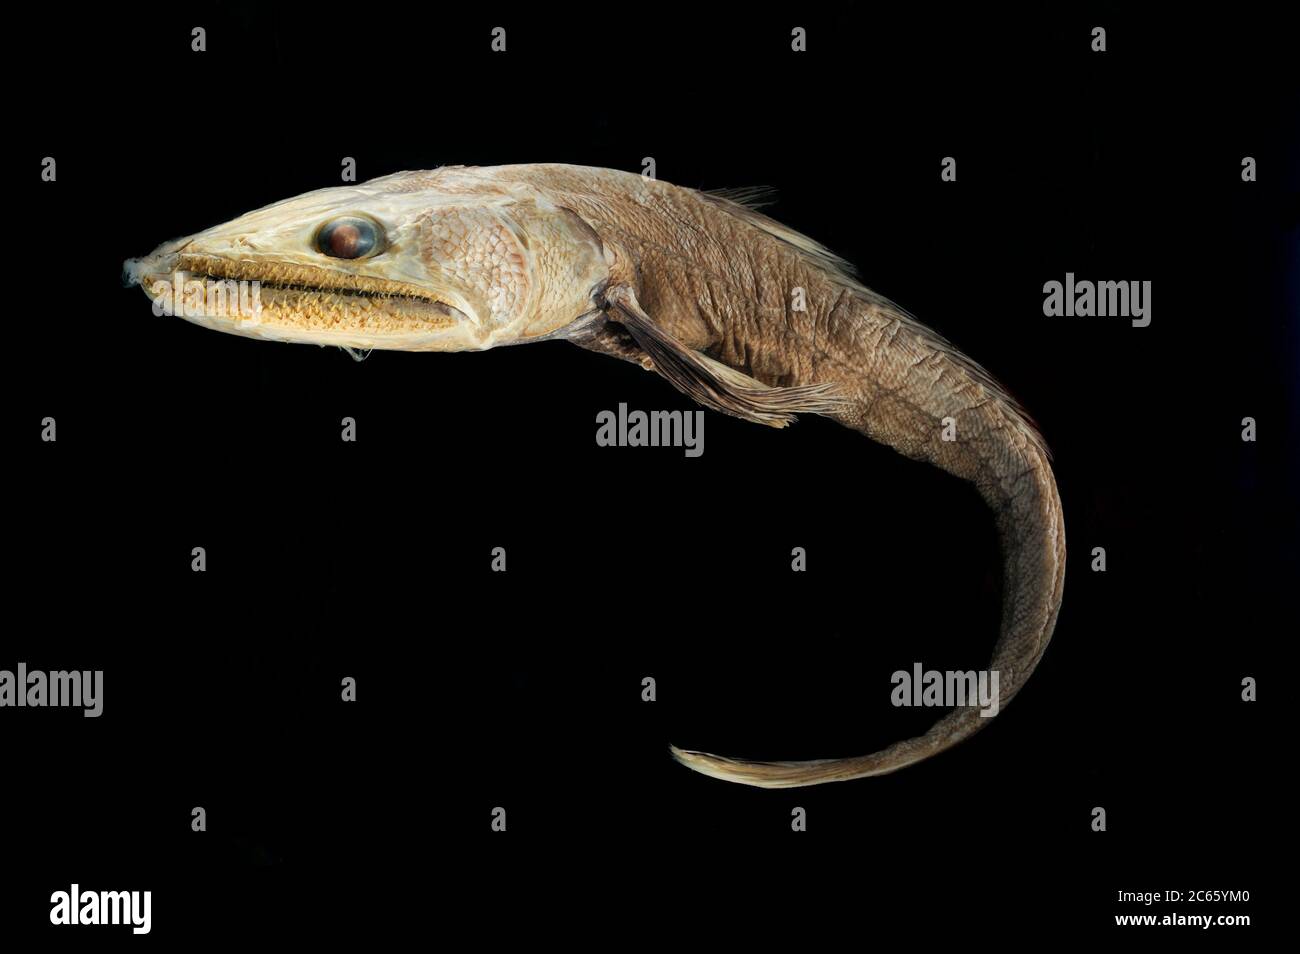 Pesce lizardato di mare profondo (Bathysaurus ferox) immagine è stata presa in collaborazione con l'Università del Museo Zoologico di Amburgo Foto Stock